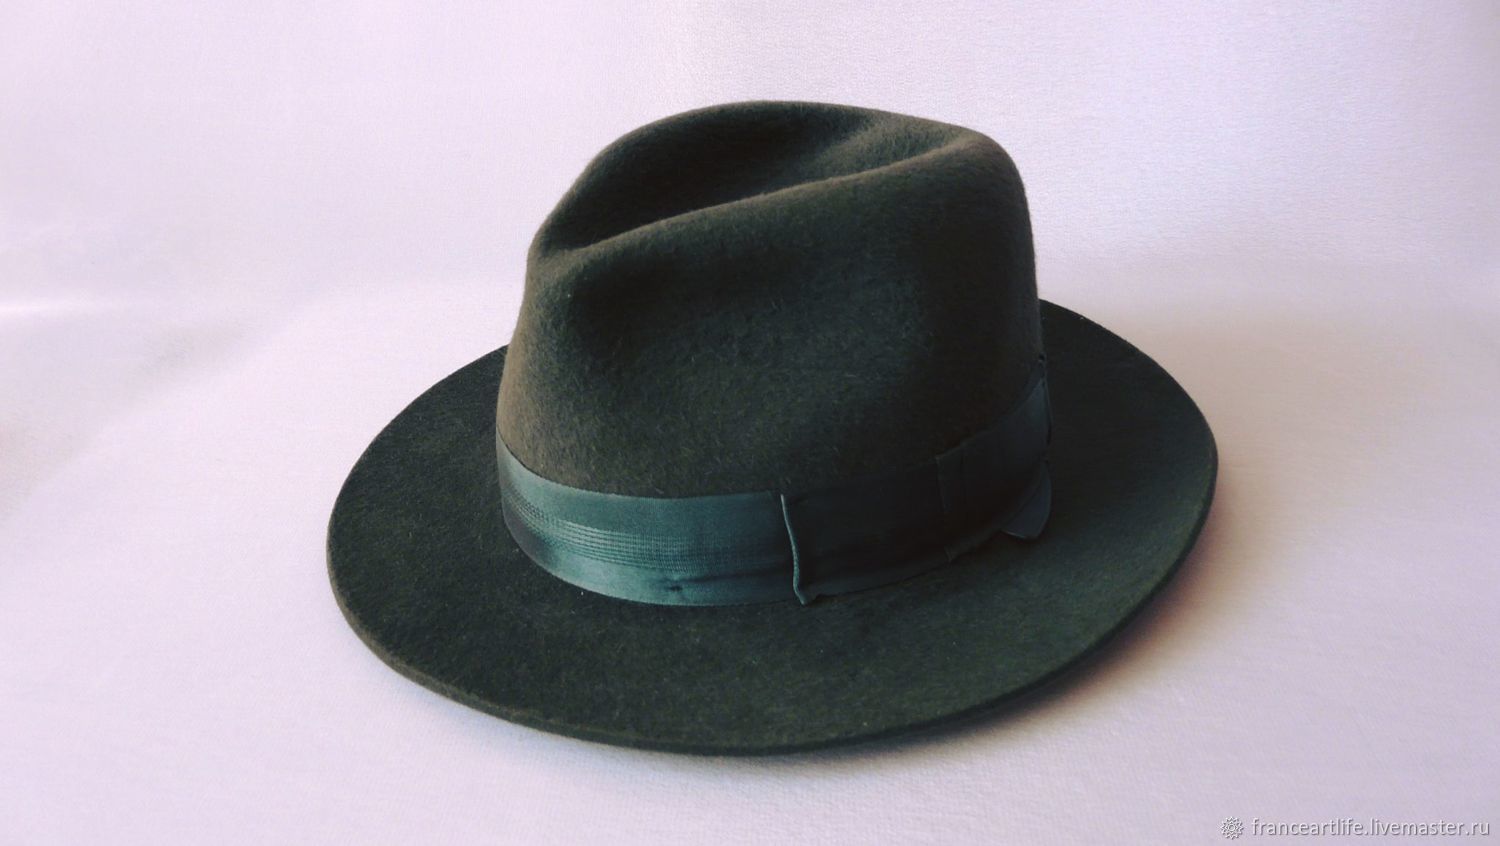 Hat 20. Фетровая шляпа мужская 19 век. Шляпы 20 века мужские. Советские шляпы мужские. Старинные шляпы мужские.